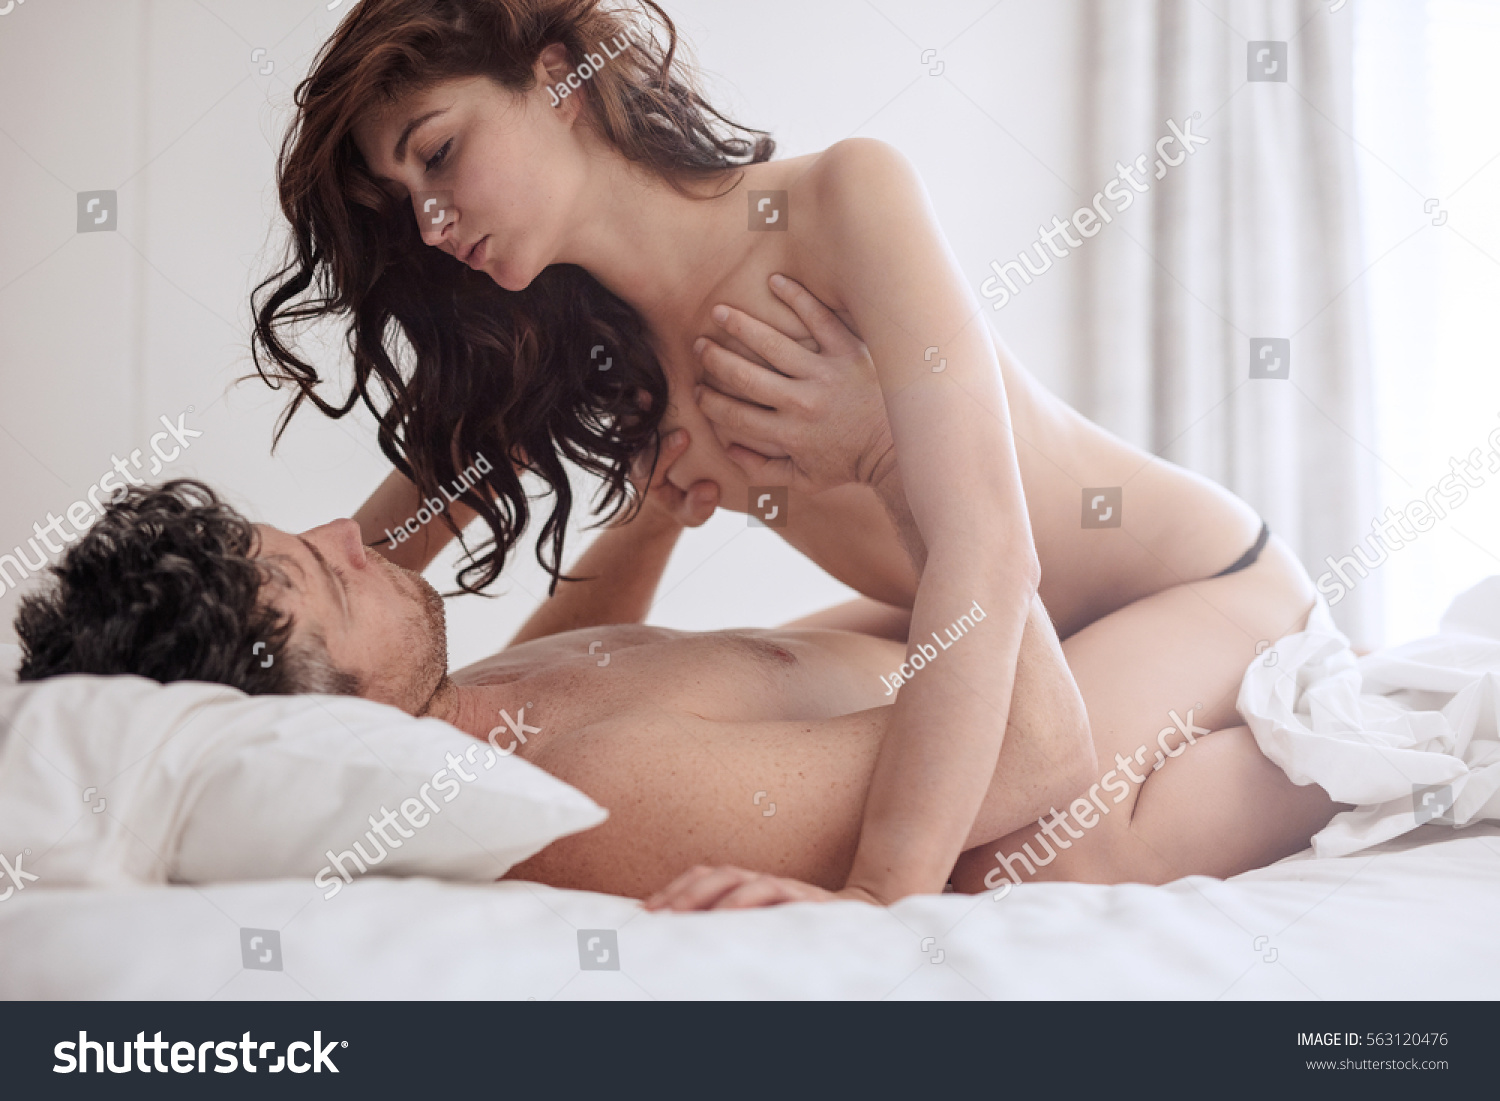 For couples sex romantic Couple Sex